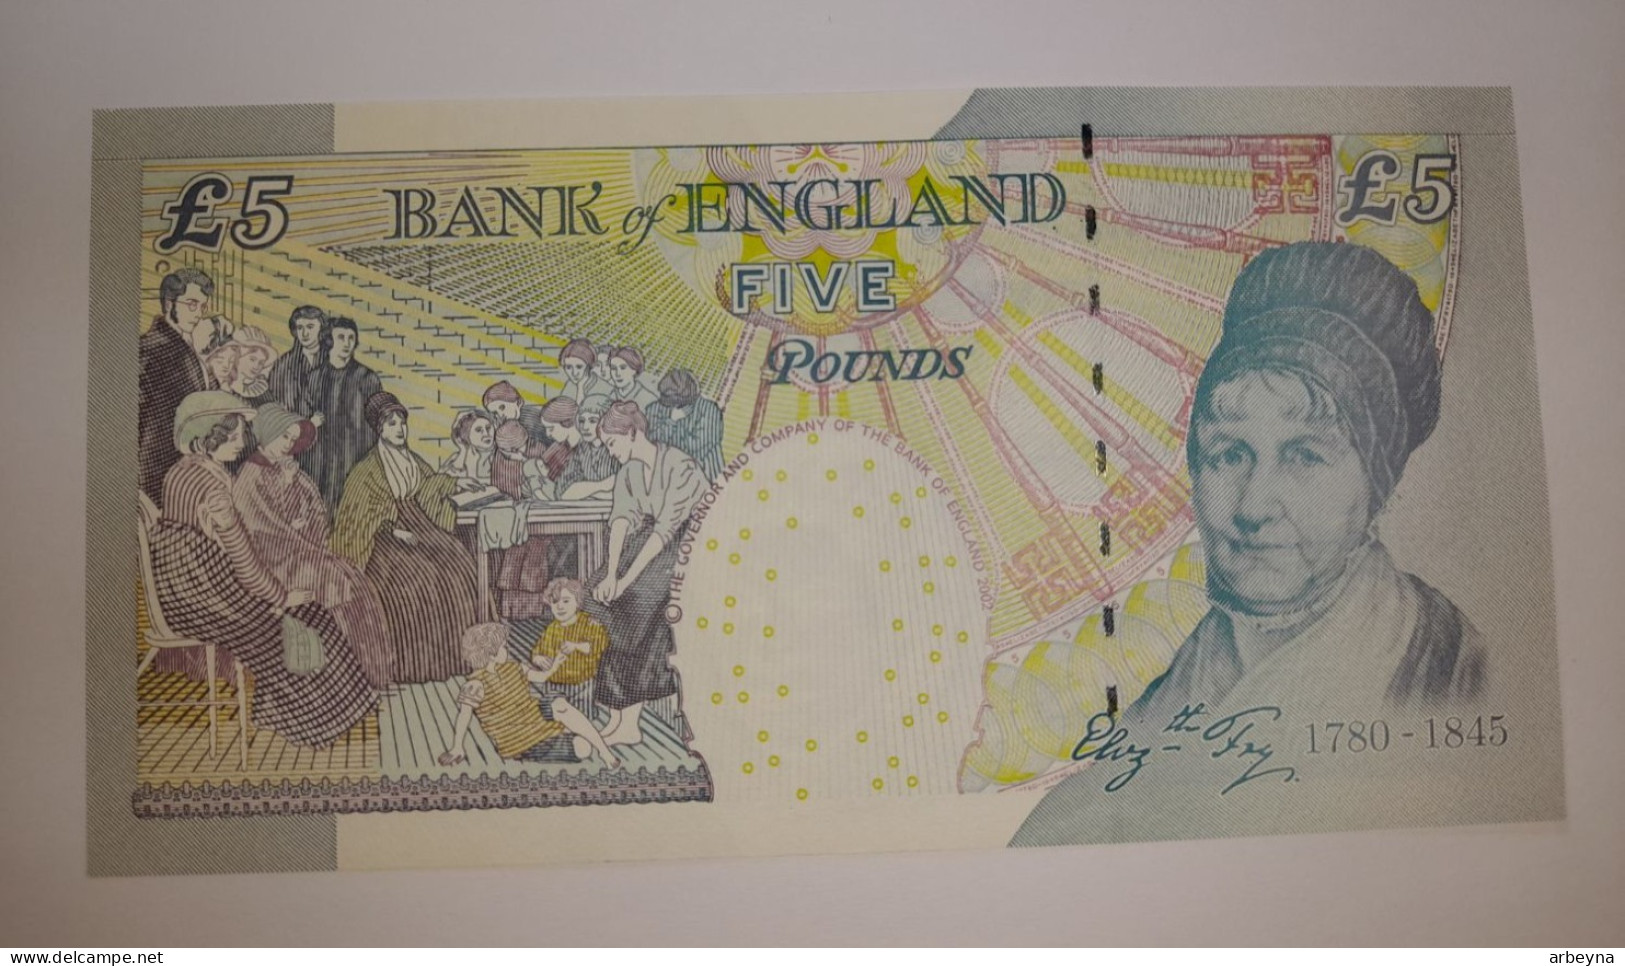 UNC England / United Kingdom - 5 Pounds - Elizabeth II - 2005 - Pick 391.c    UNC - 5 Pounds